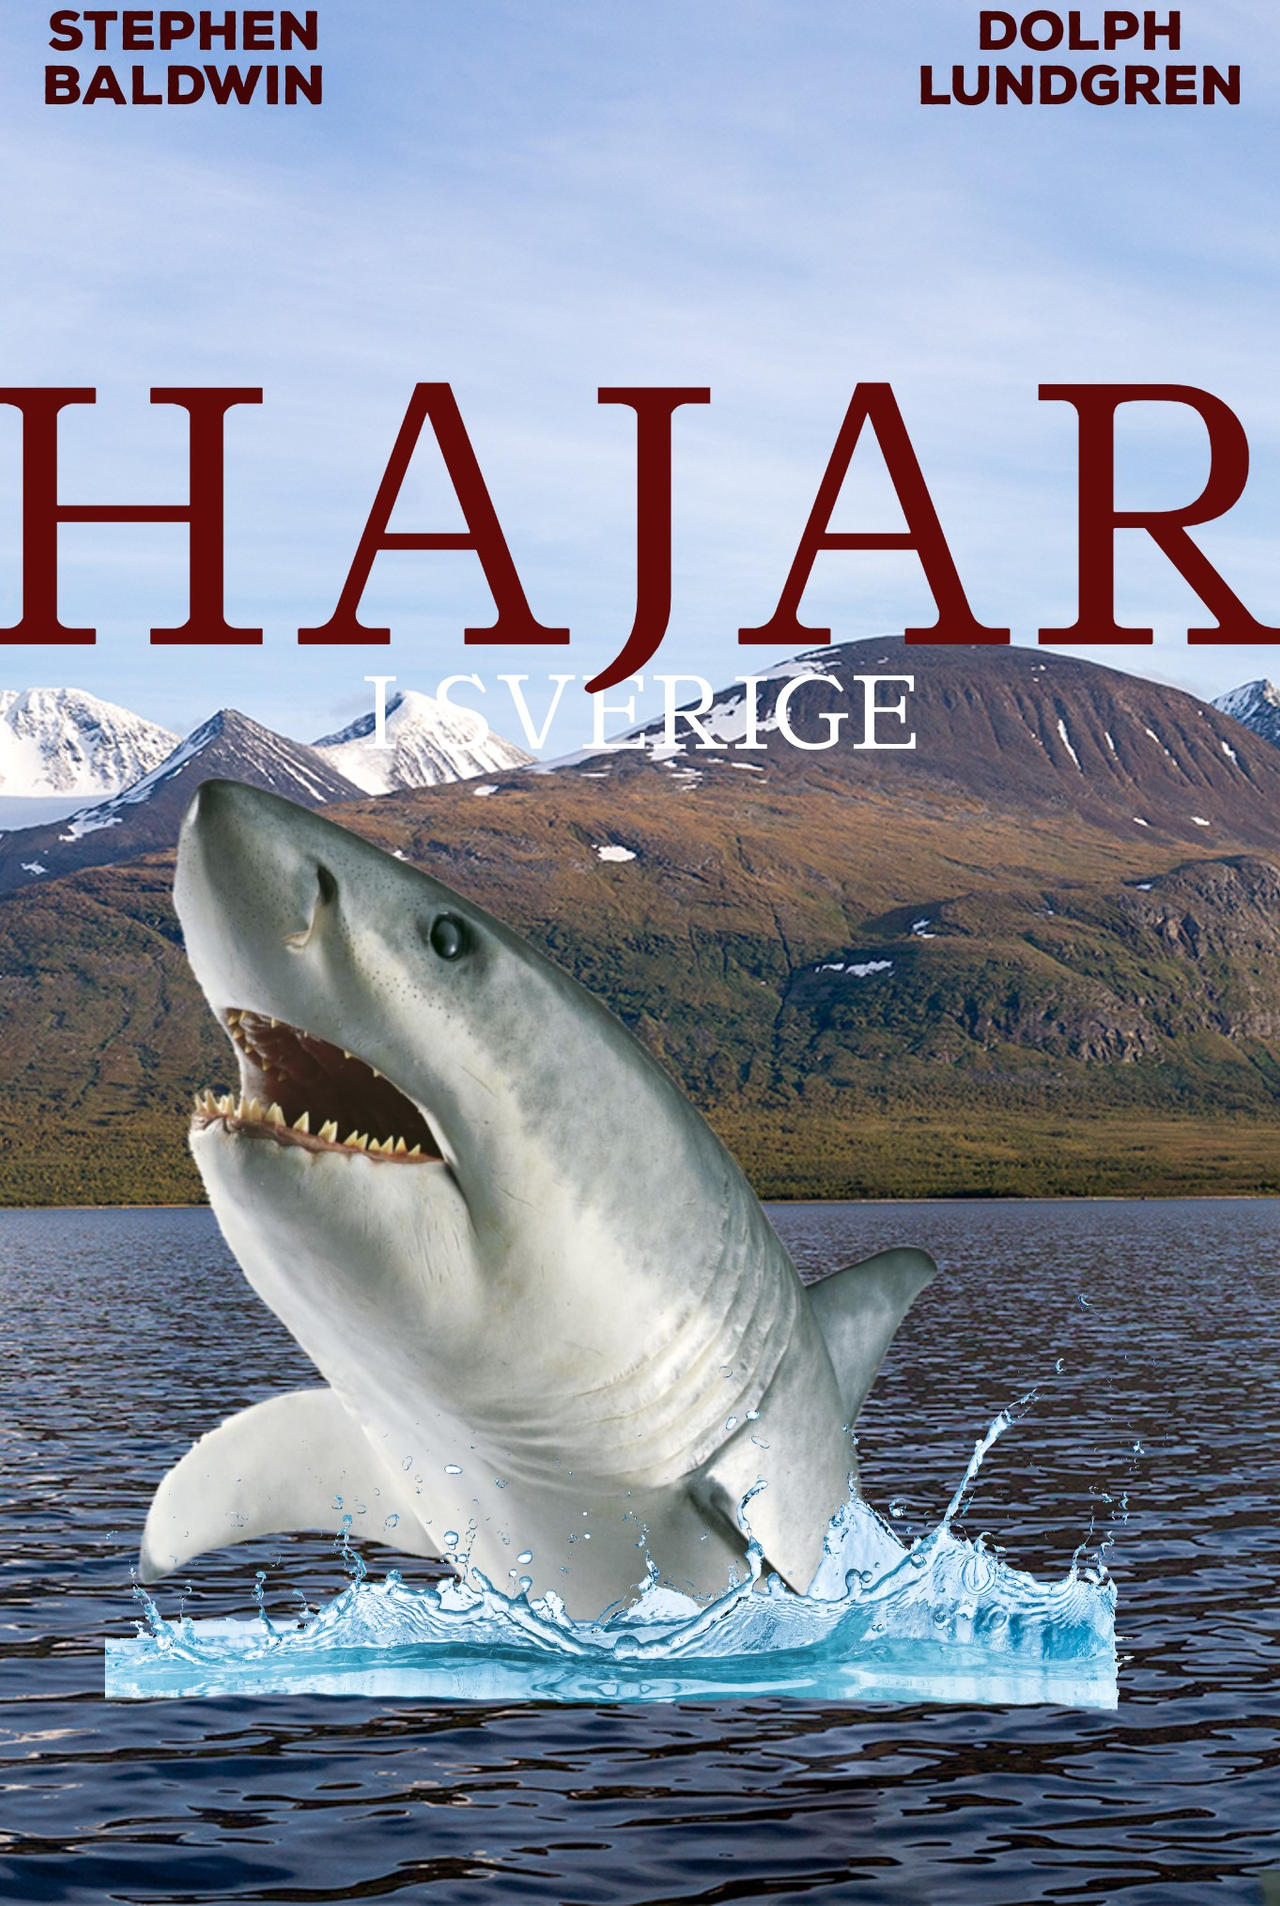 Sharks in Sweden movie poster